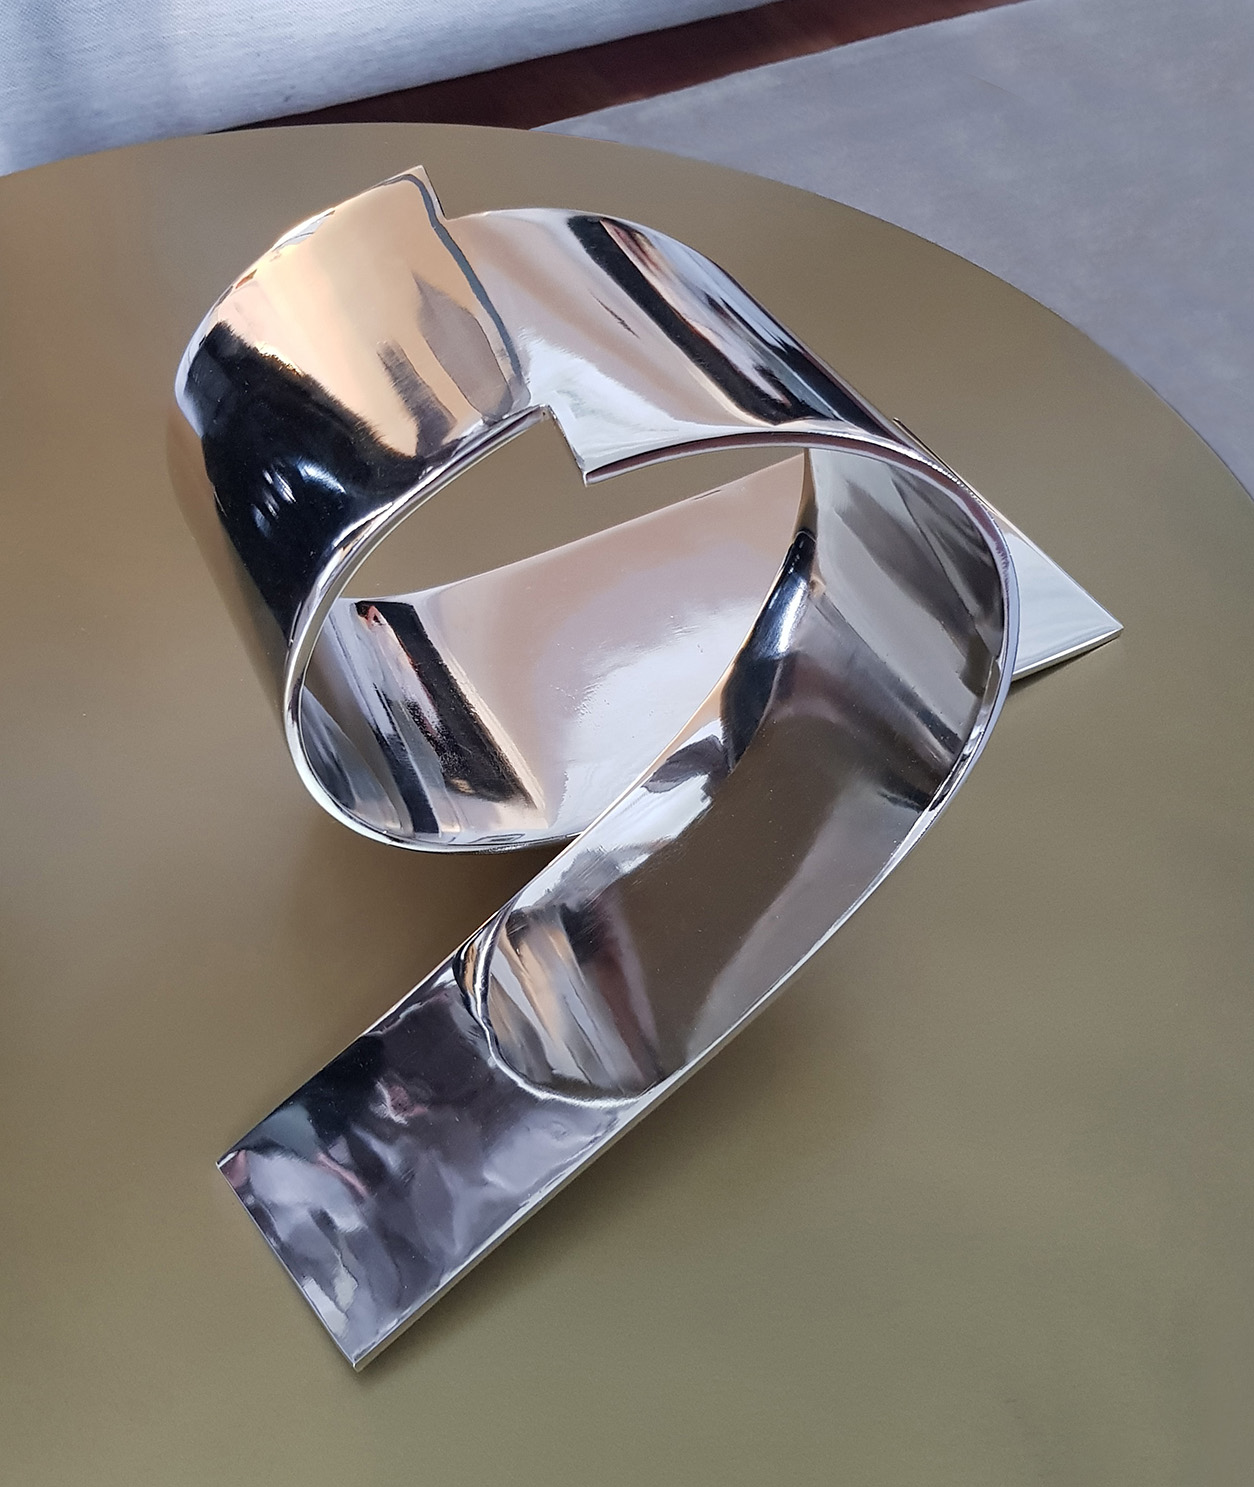 Abstract sculpture Nickel steel